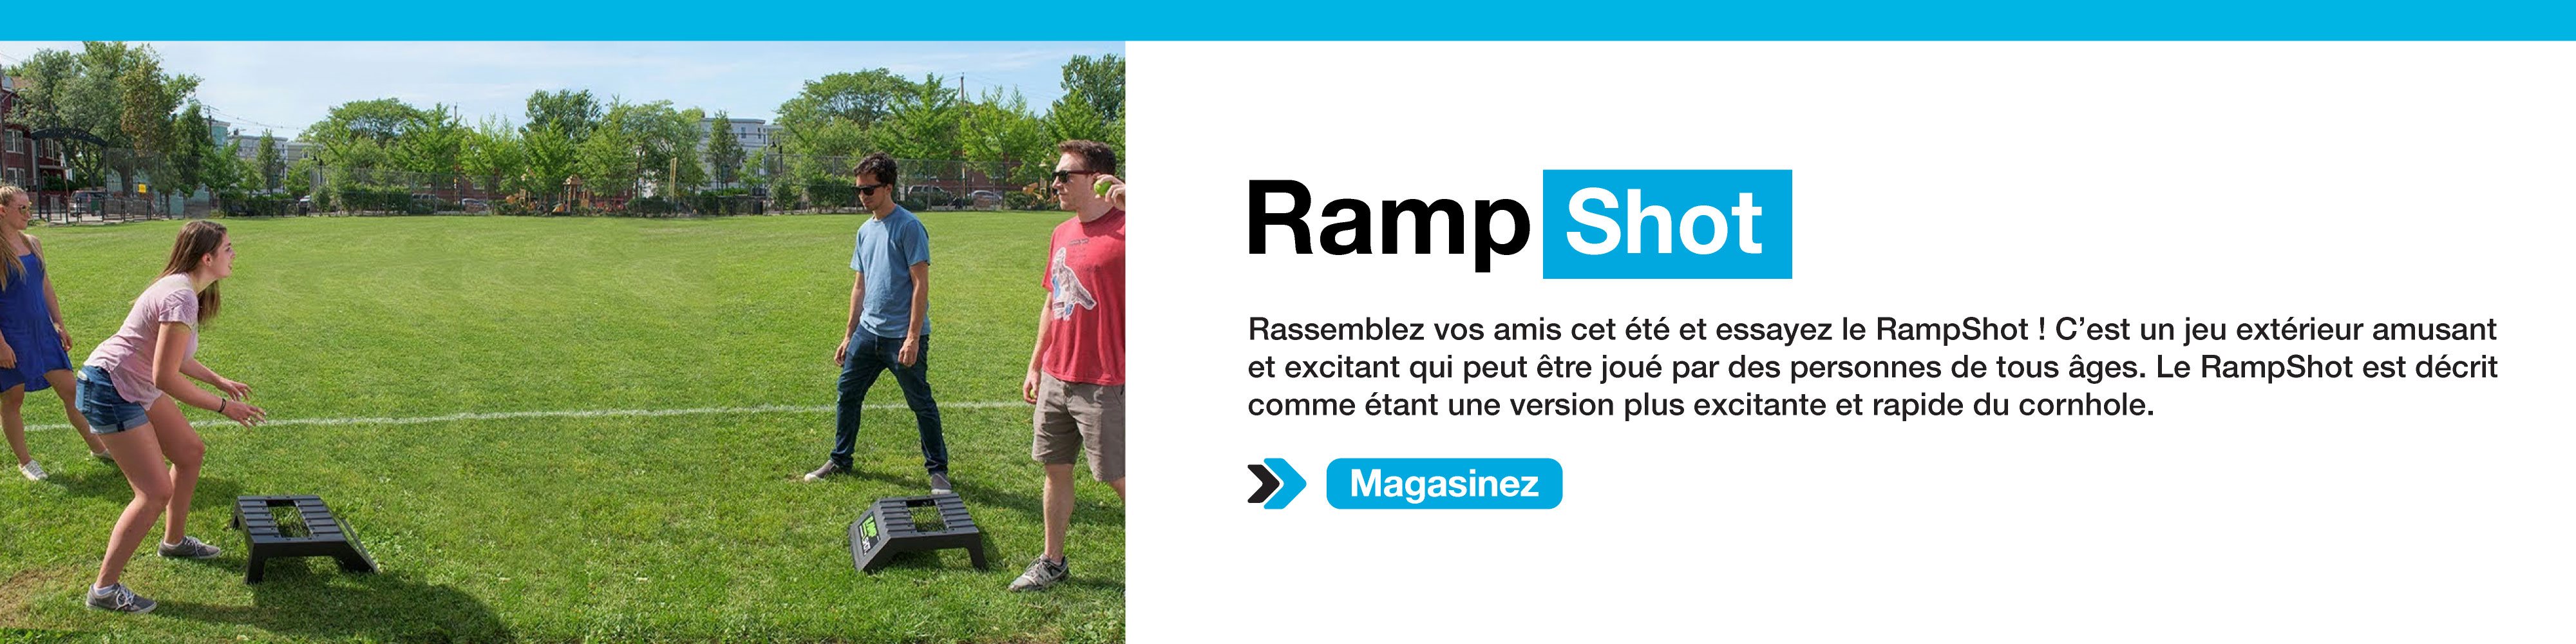 Banniere-RampShot